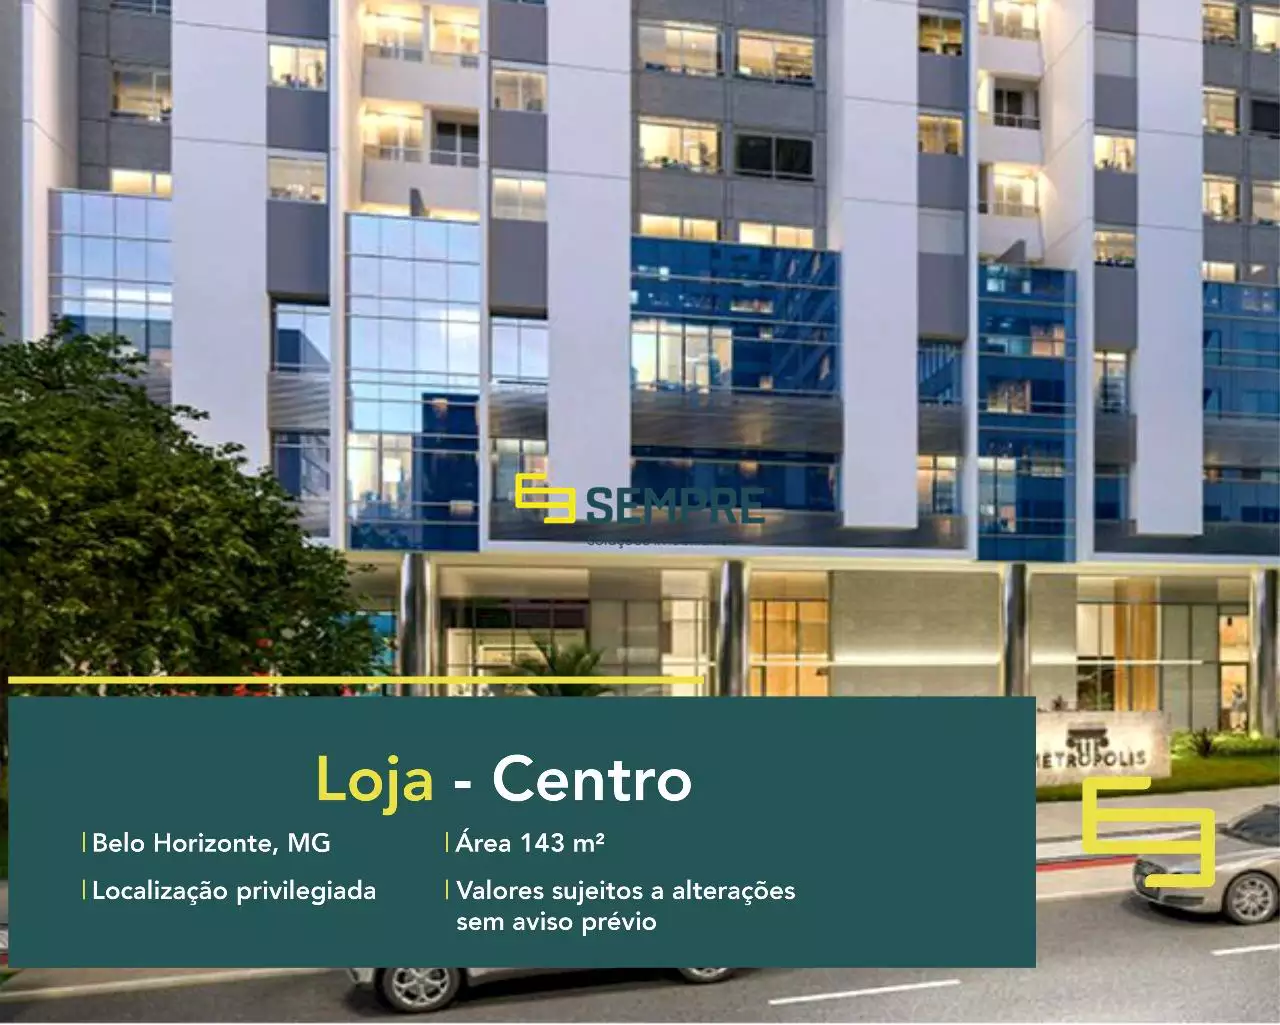 Loja próxima avenida Alvares Cabral no Centro em Belo Horizonte, em excelente localização. O ponto comercial conta com área de 143 m².